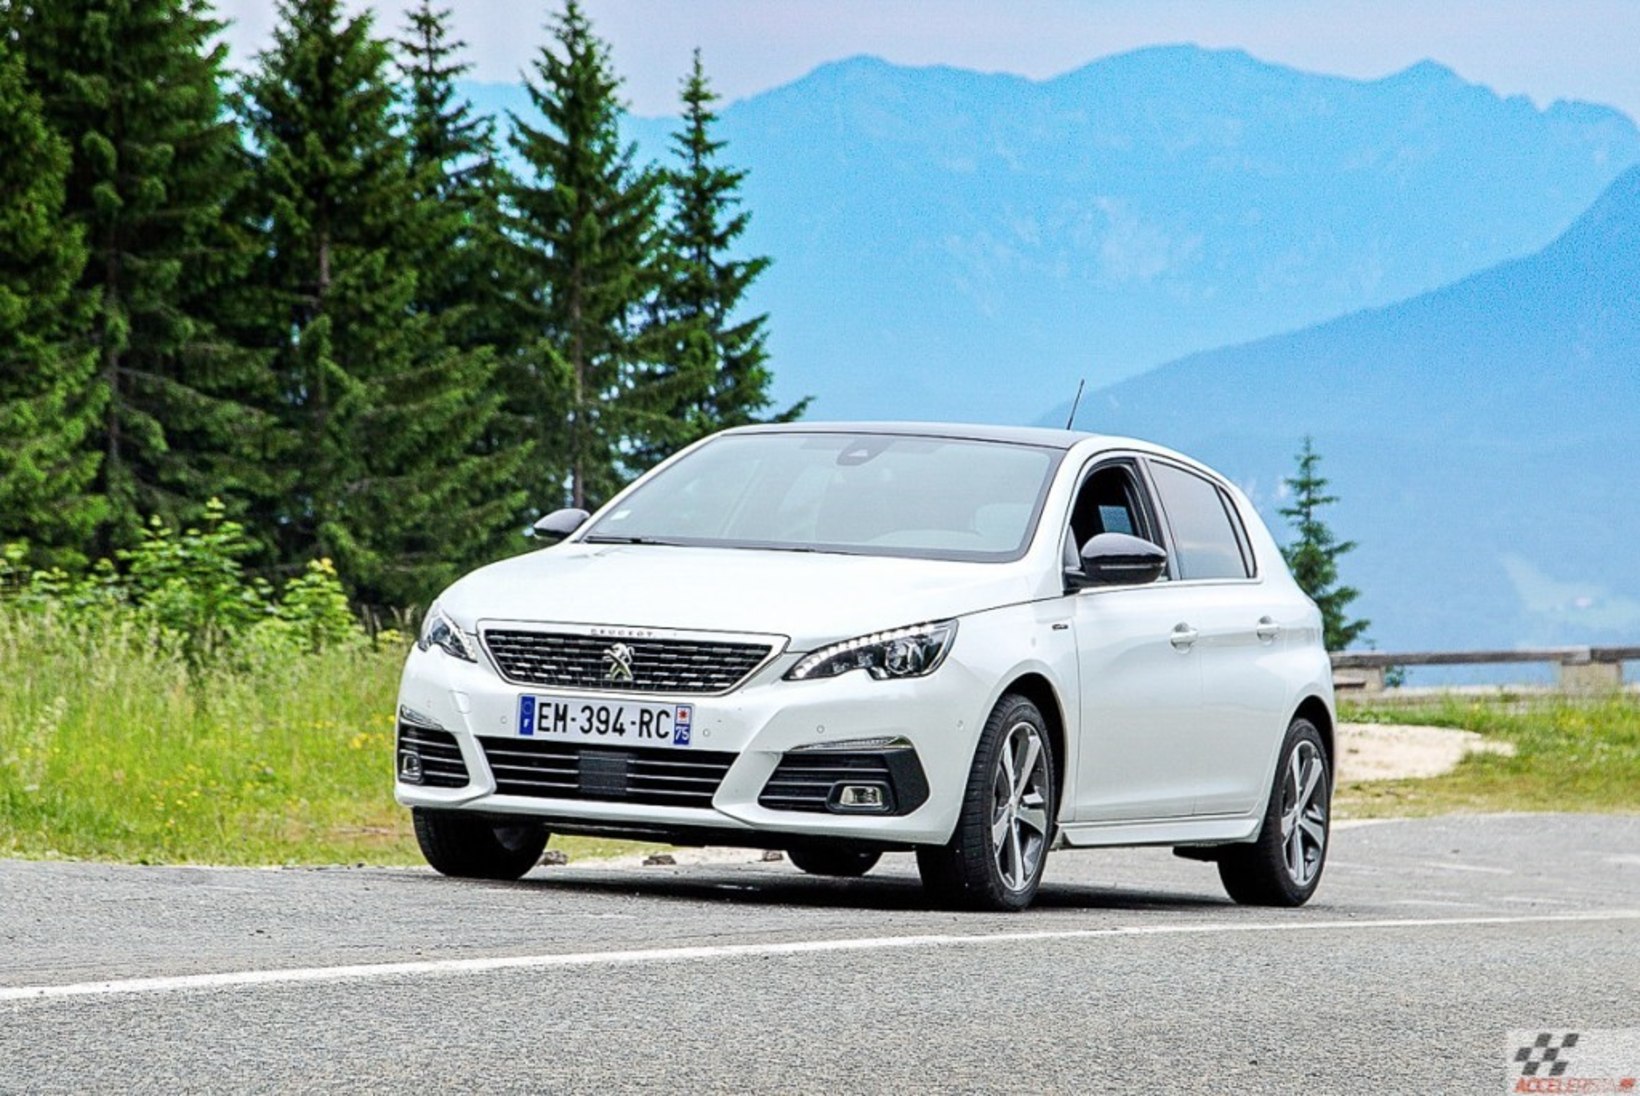 Uuenenud Peugeot 308: parimad uudised tulevad kapoti alt ja käigukastist